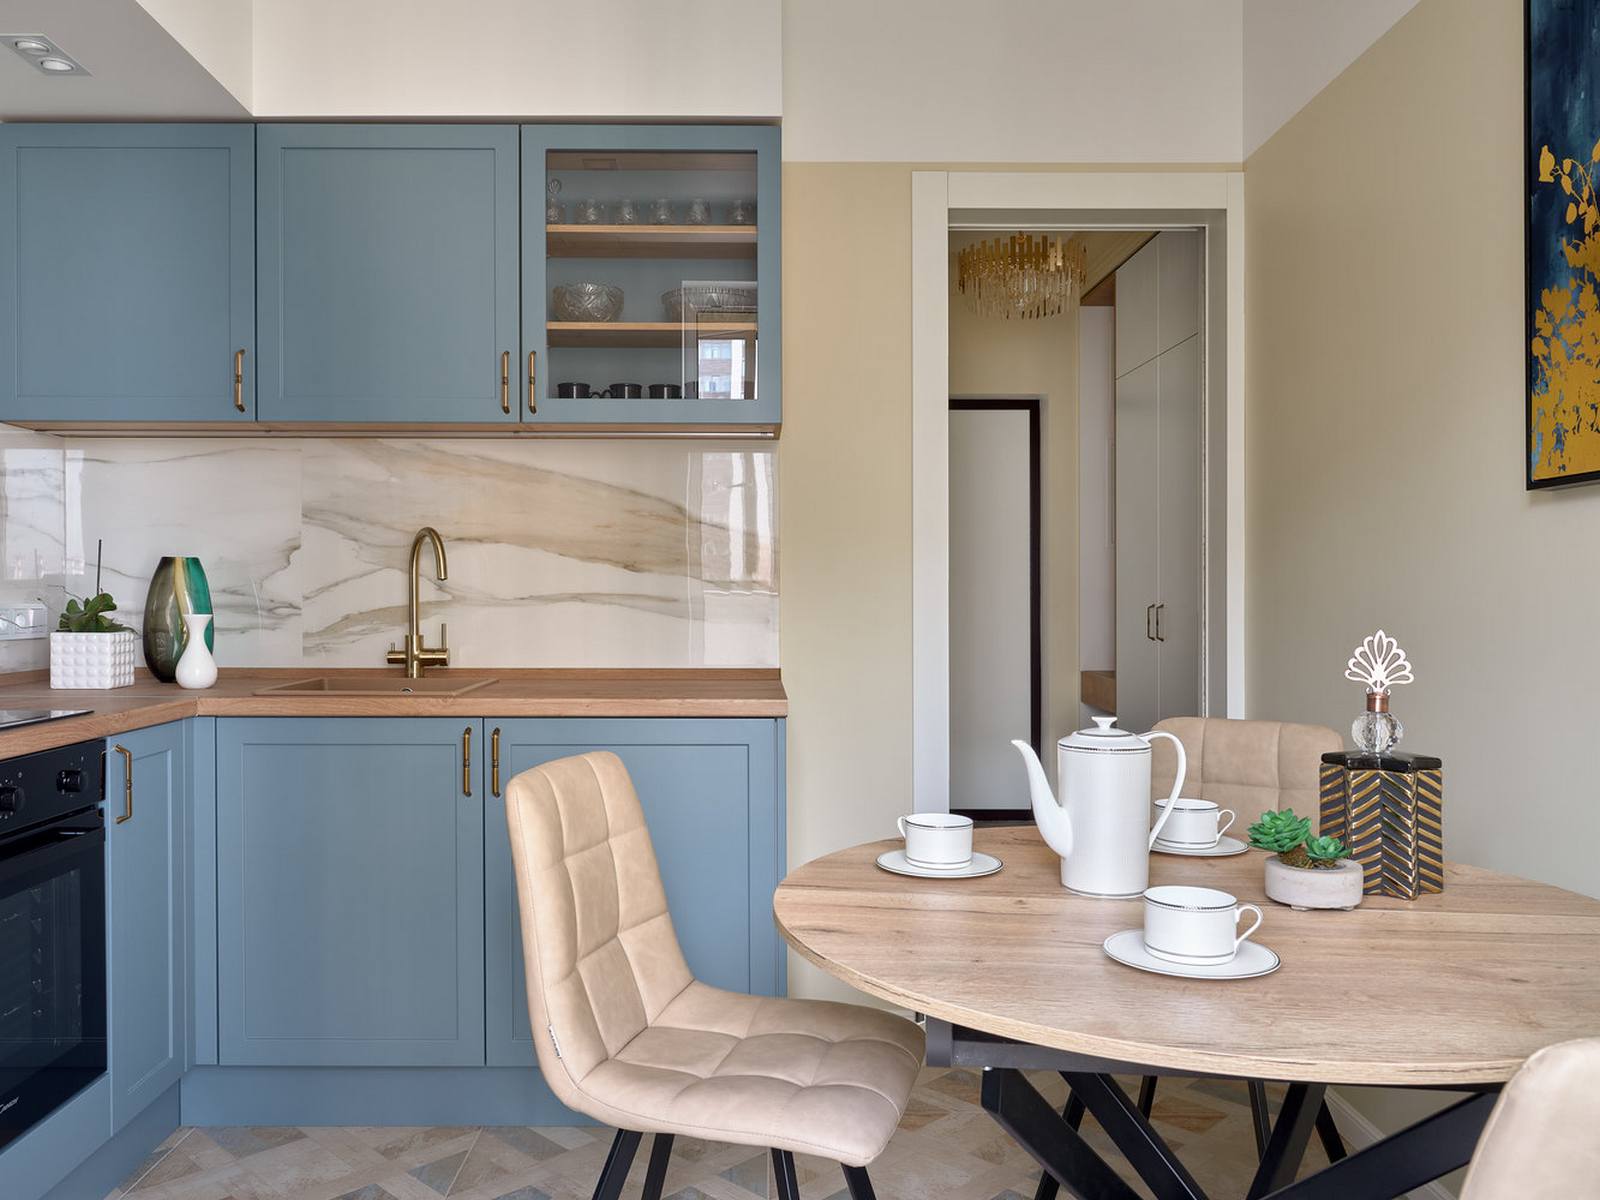 Phòng bếp được thiết kế với bố cục chữ L, với hệ tủ trên và dưới được sơn màu xanh lam, mặt bàn bằng gỗ cùng những điểm nhấn trên vòi nước, tay nắm cửa mạ vàng đồng sang trọng.